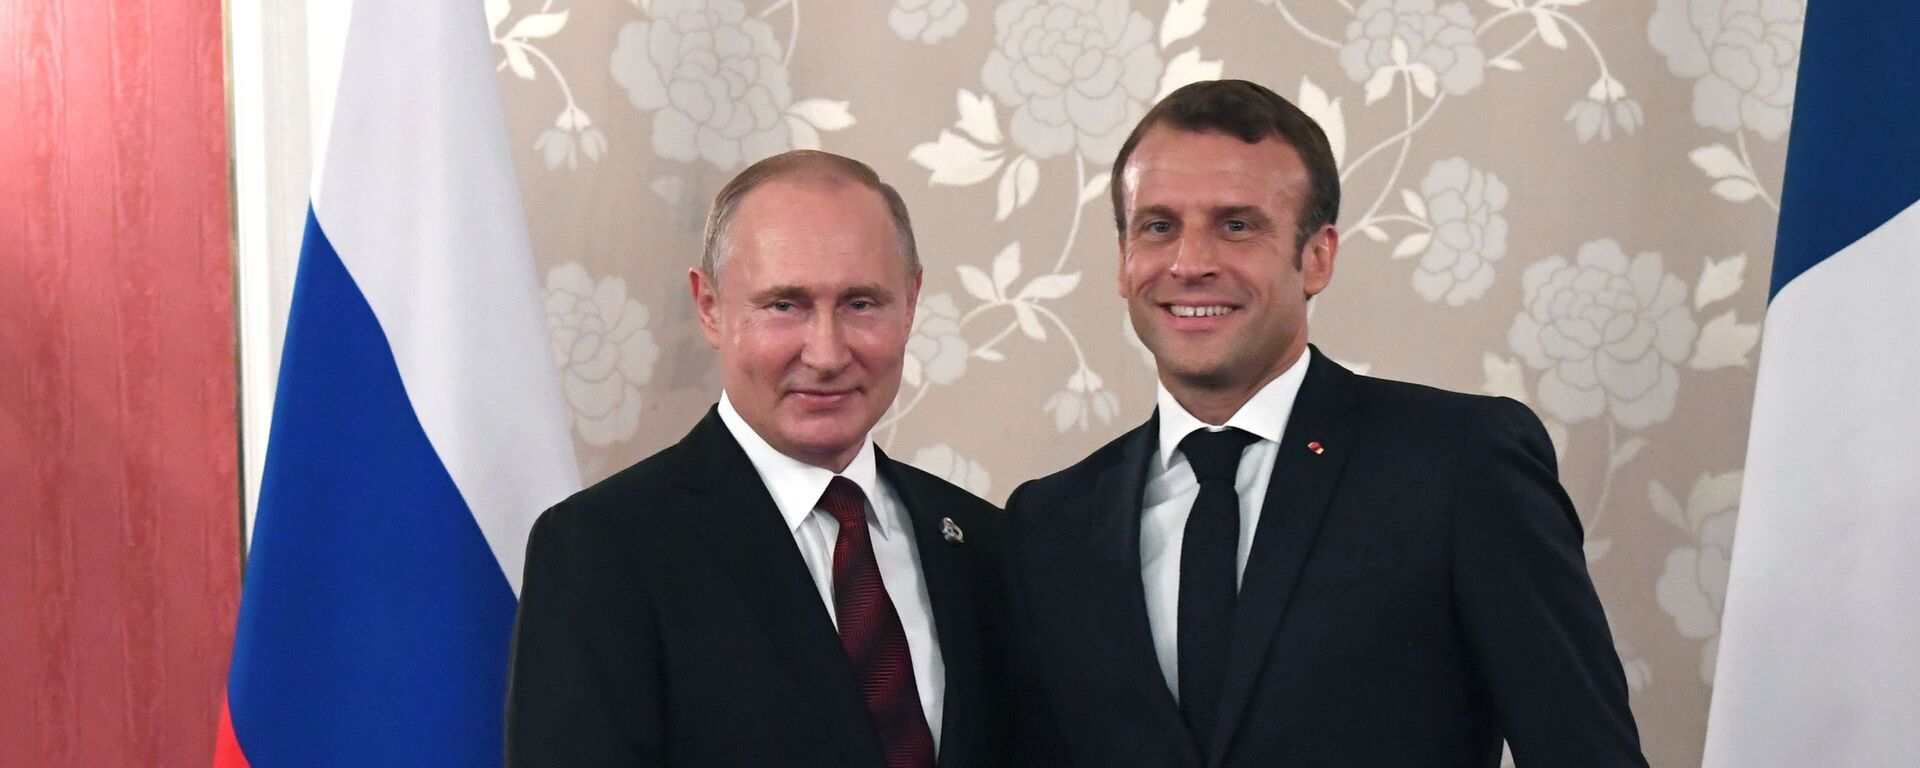 El presidente de Rusia, Vladímir Putin, y el presidente de Francia, Emmanuel Macron, durante la cumbre del G20 (archivo) - Sputnik Mundo, 1920, 21.12.2021